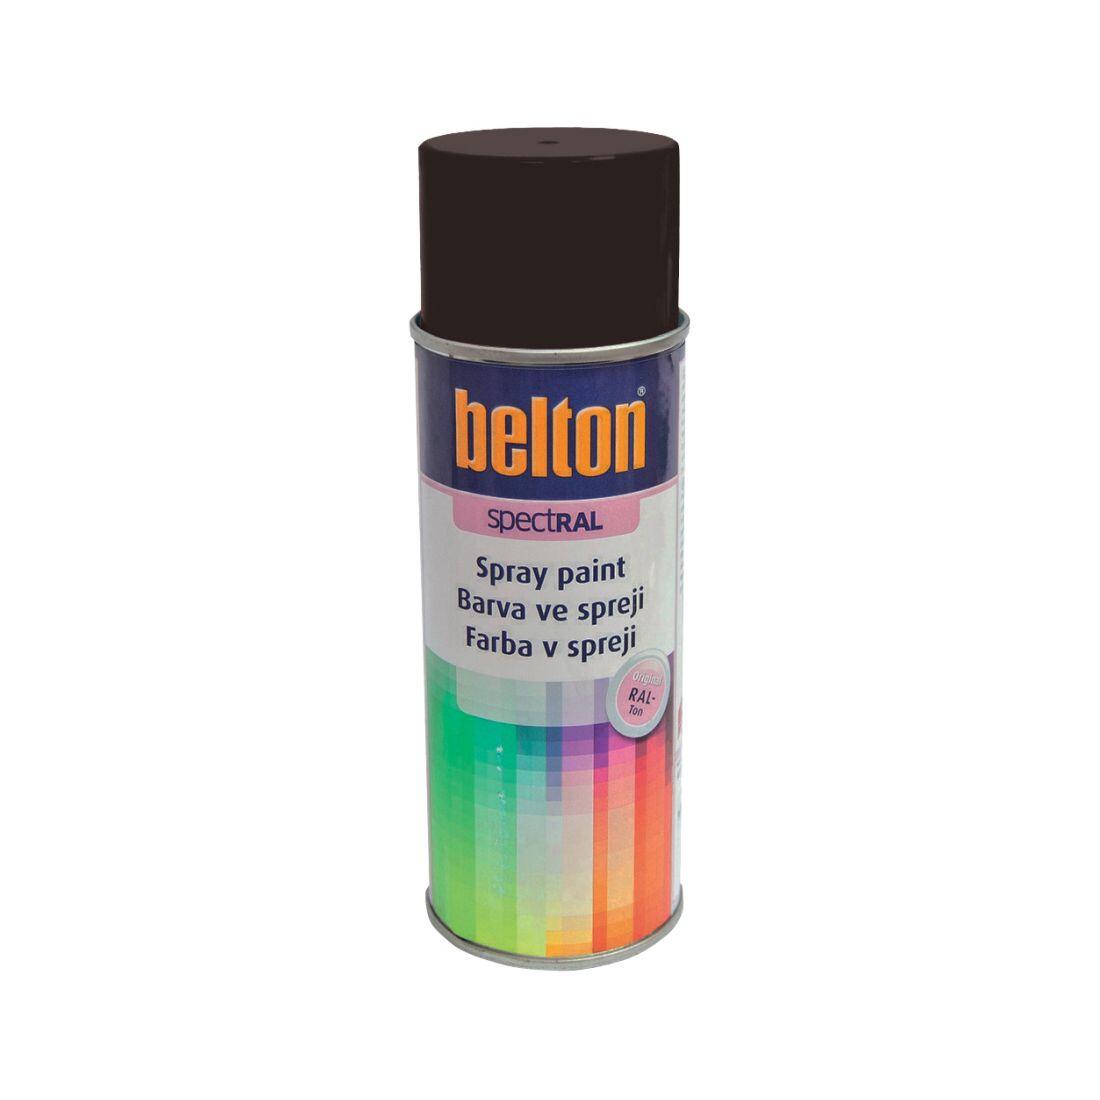 barva ve spreji BELTON RAL 8017, 400ml HN čokoládová 0.31 Kg MAXMIX Sklad14 825541 10